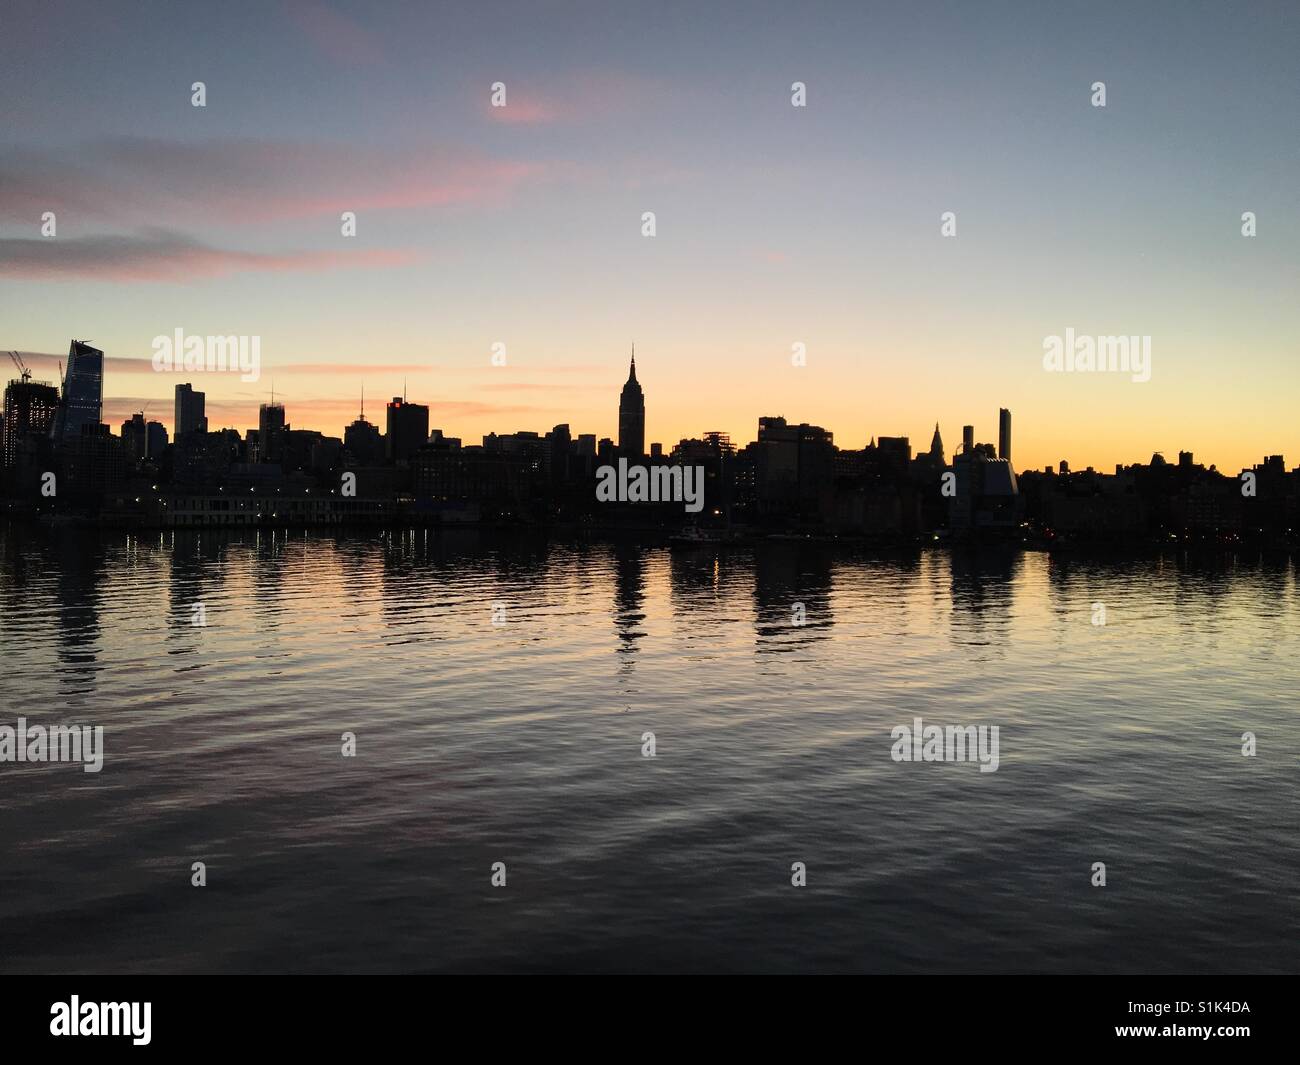 Skyline de Manhattan silhouette sur la lueur de l'aube ciel montrant un célèbre monument avec reflets dans l'eau encore de l'Hudson River Banque D'Images